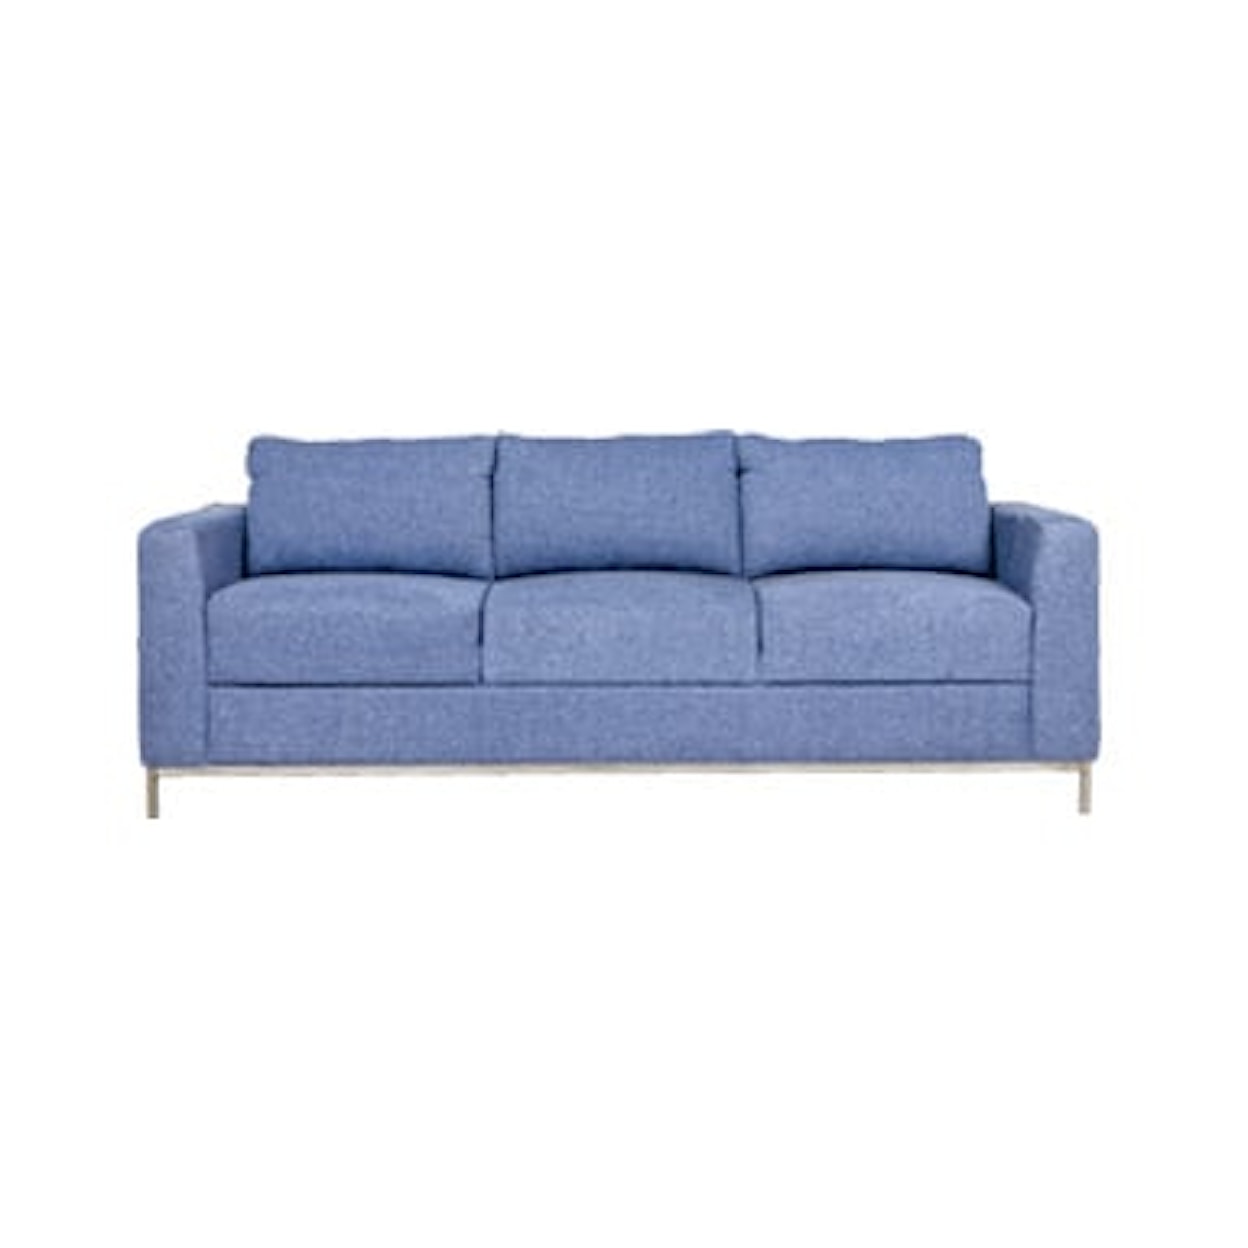 New Classic Newport Sofa